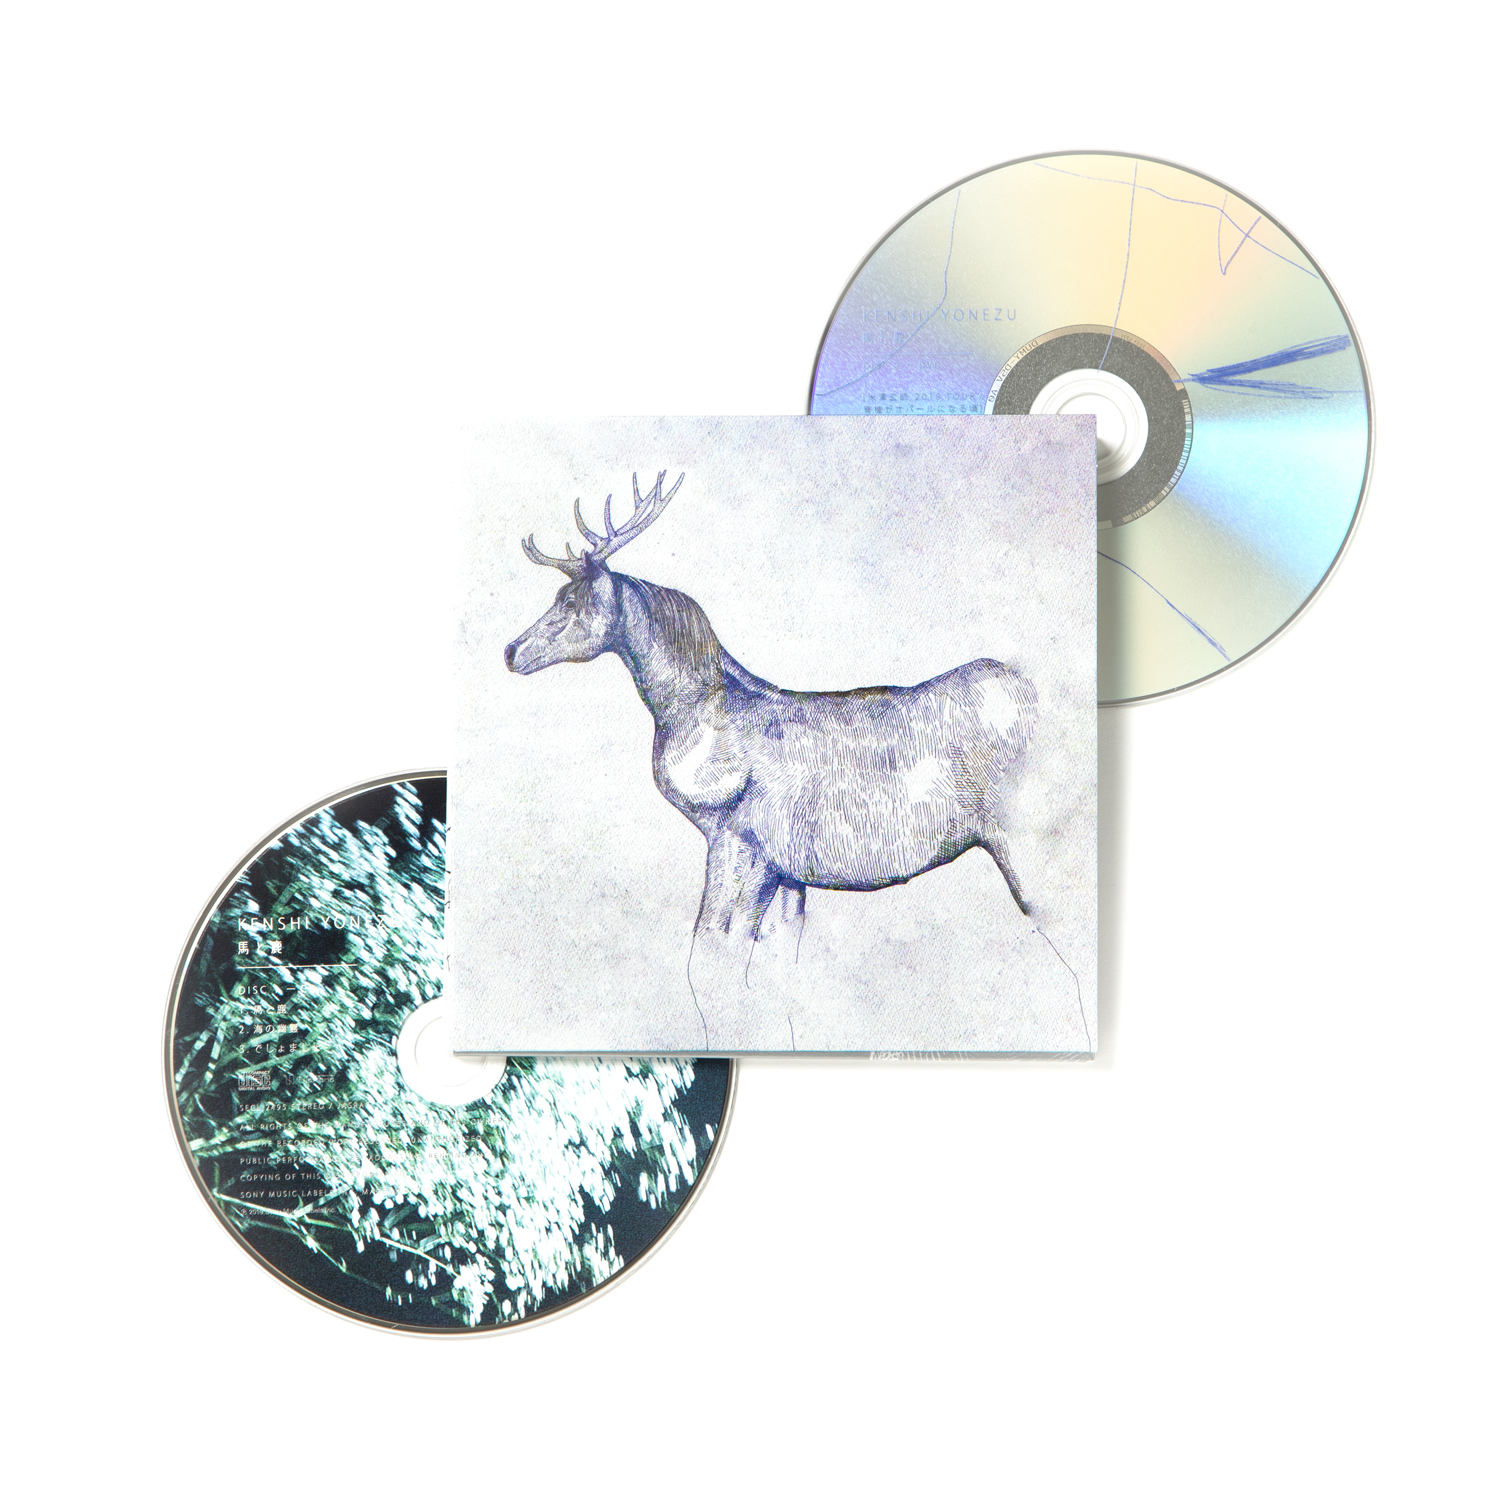 米津玄師、9月11日リリースのニュー・シングル『馬と鹿』商品写真を発表